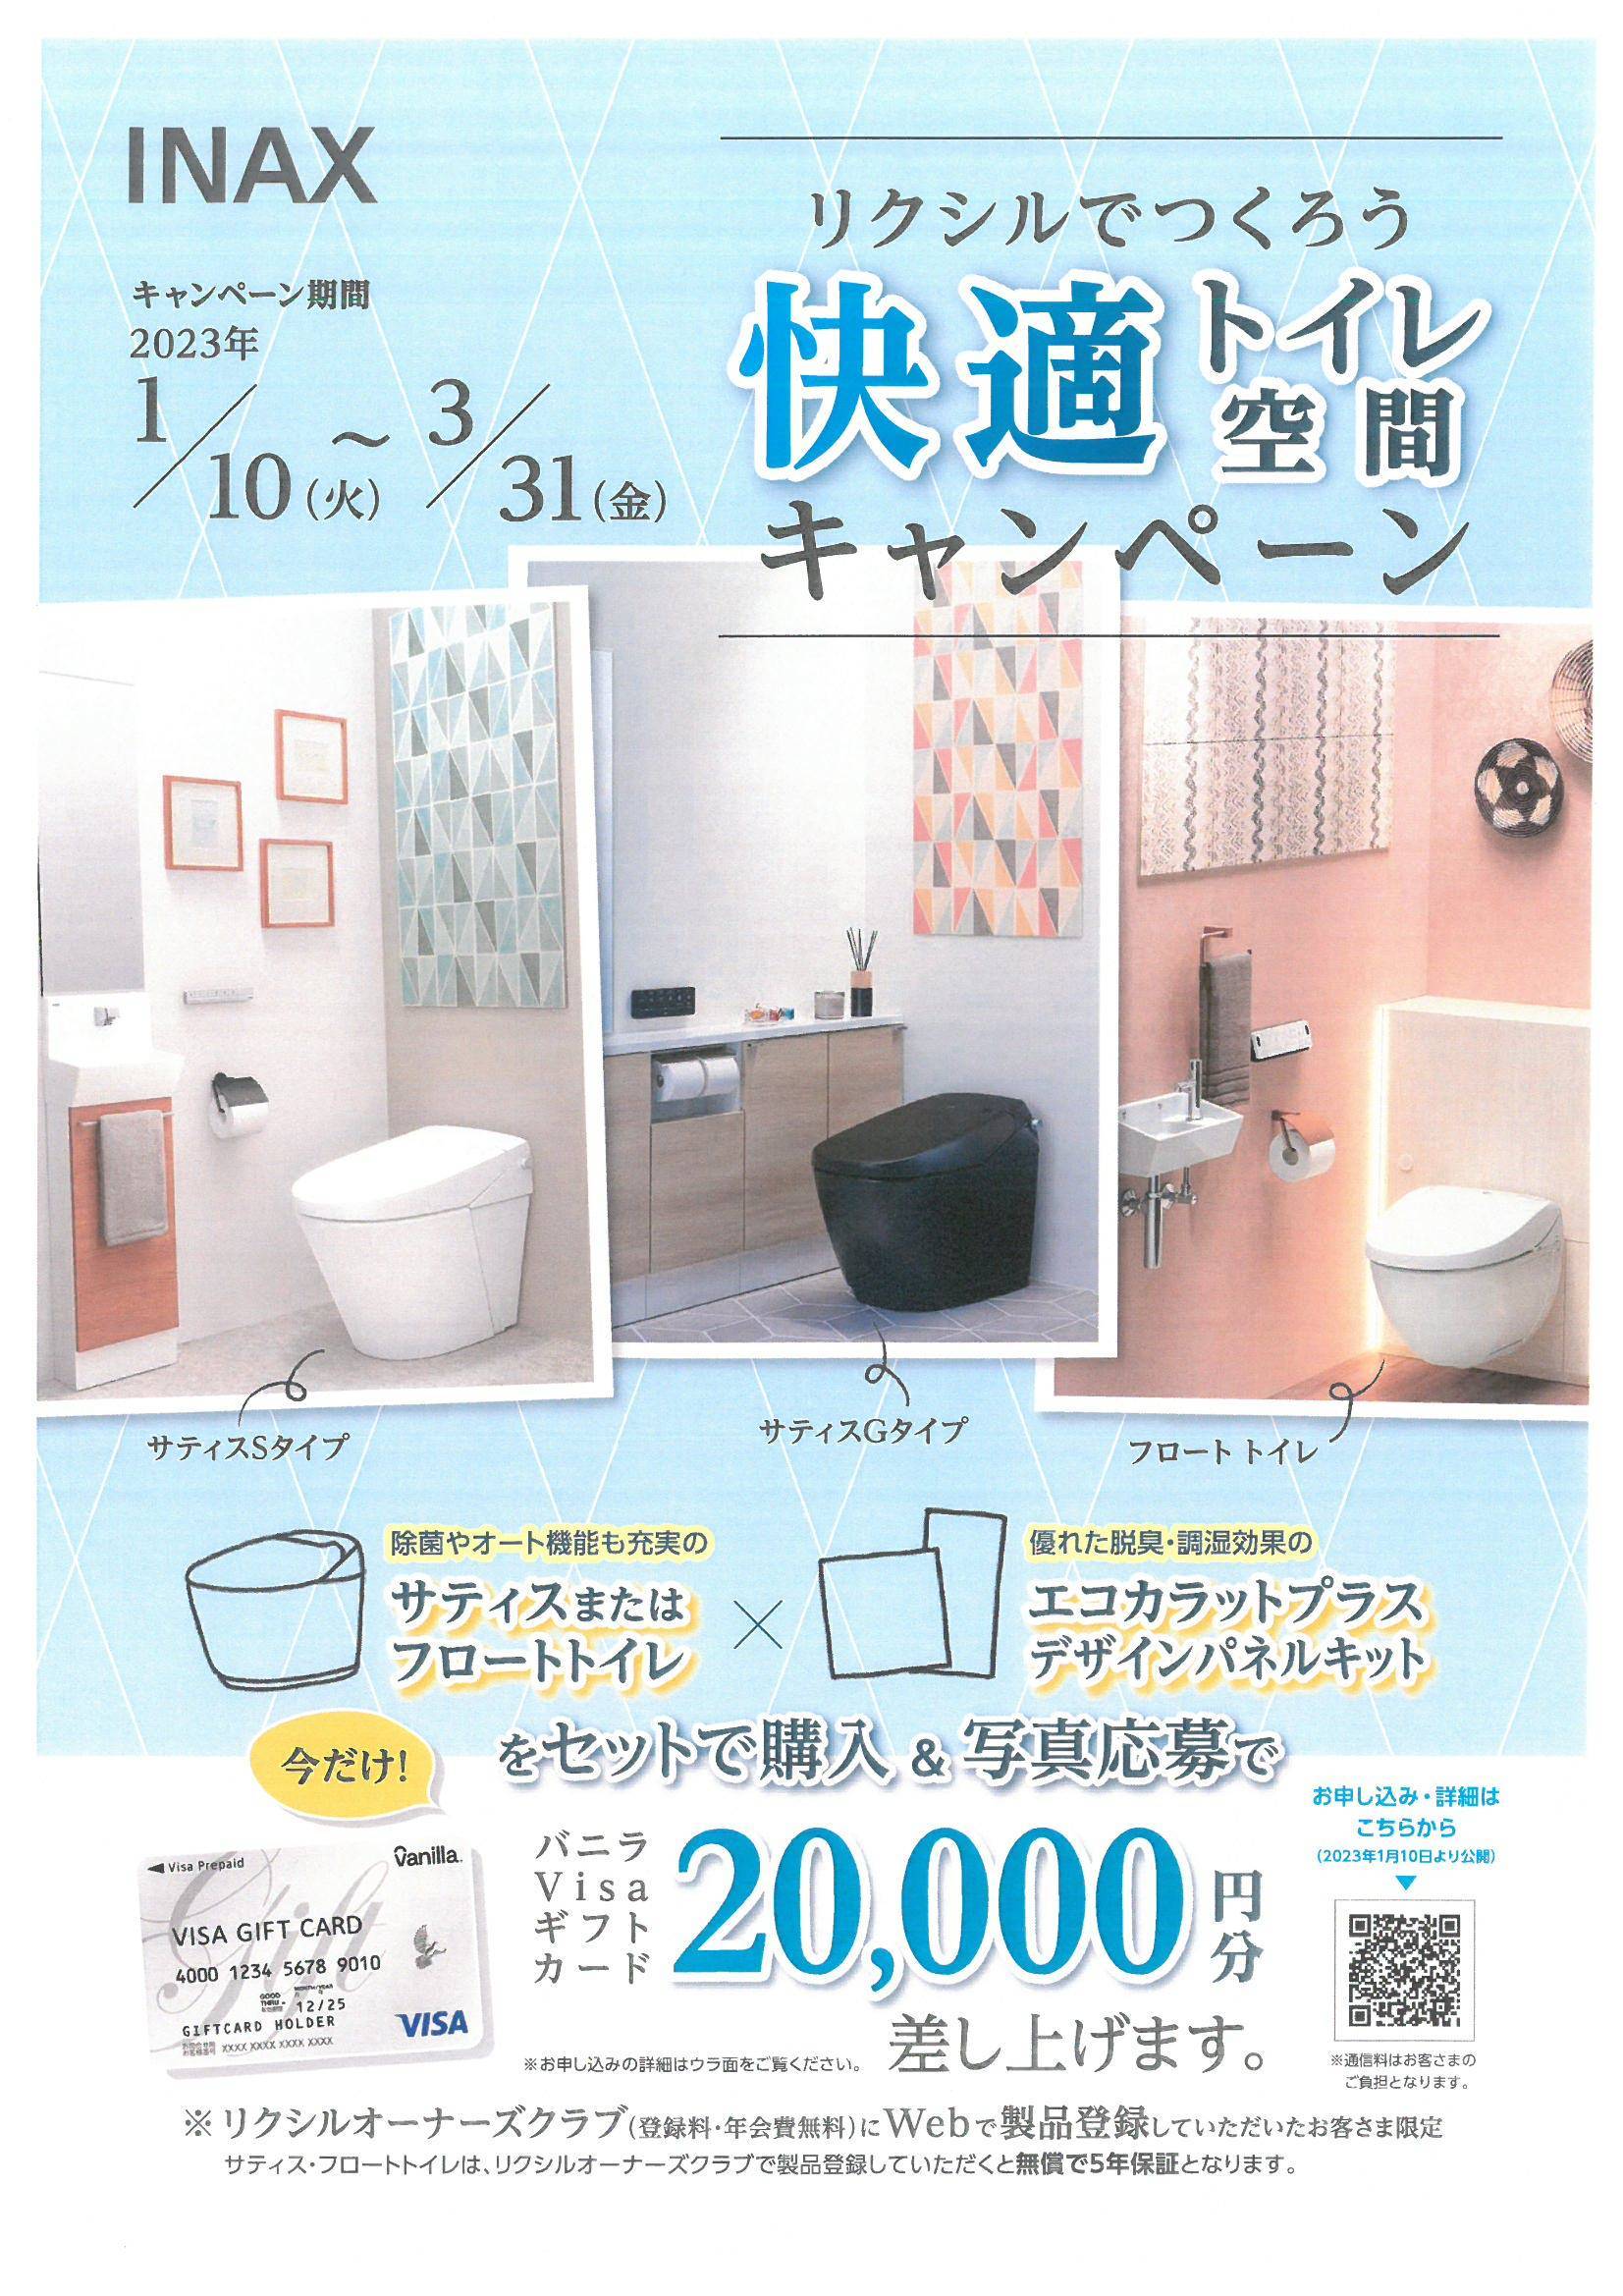 快適トイレ空間キャンペーン開催中です🤗🚽 鎌田トーヨー住器のイベントキャンペーン 写真1